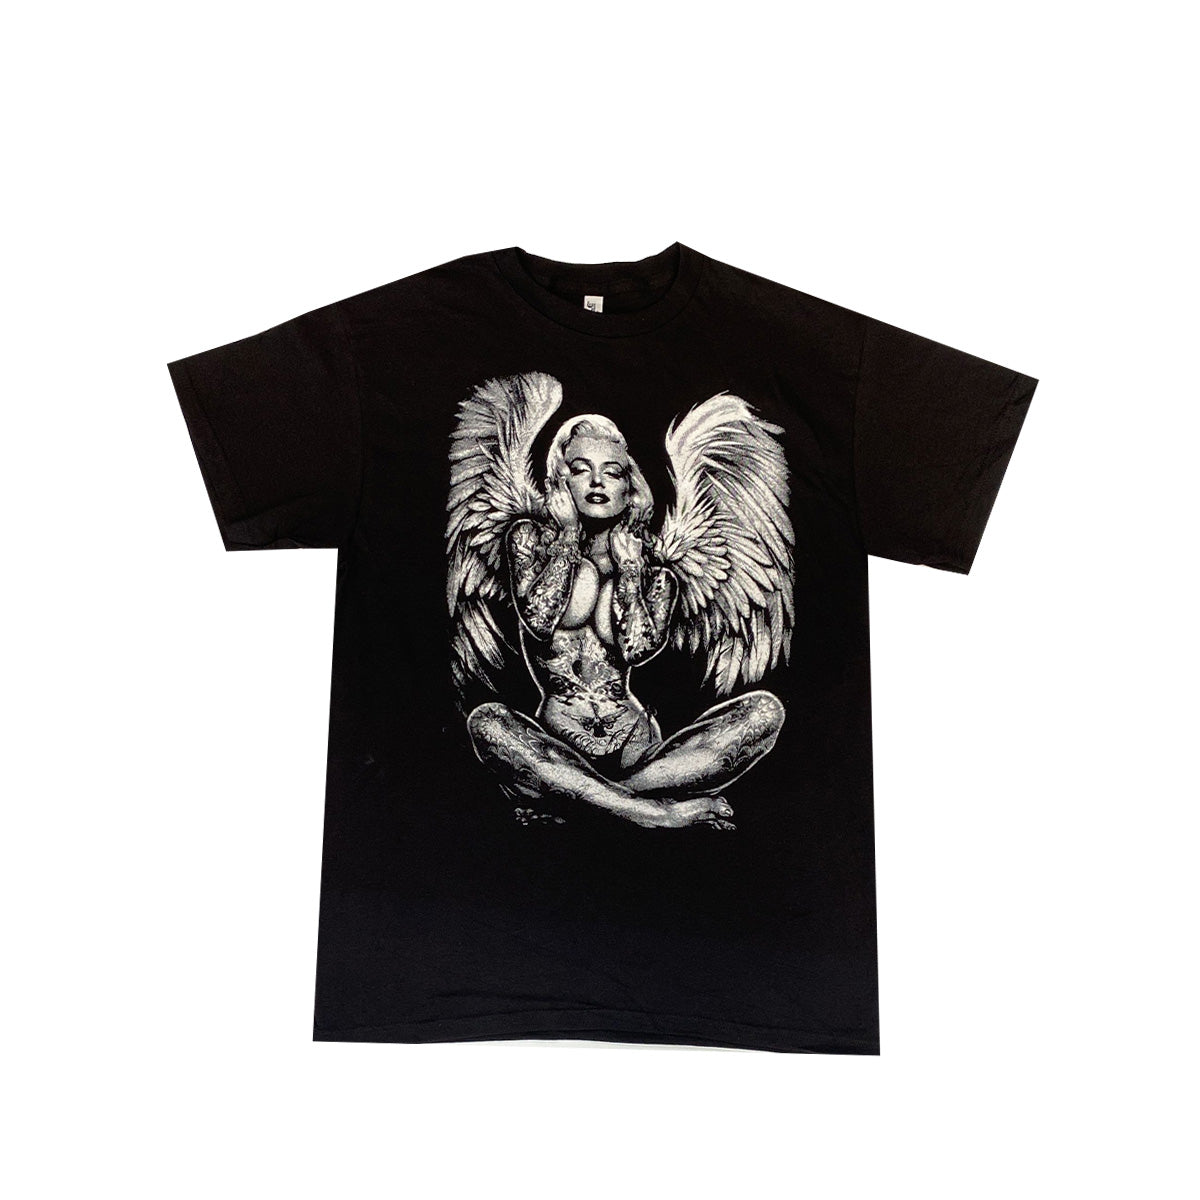 Camiseta Marilyn Angel 100% Algodón, Pack de 5 Unidades, M, L, XL, XXL, XXXL